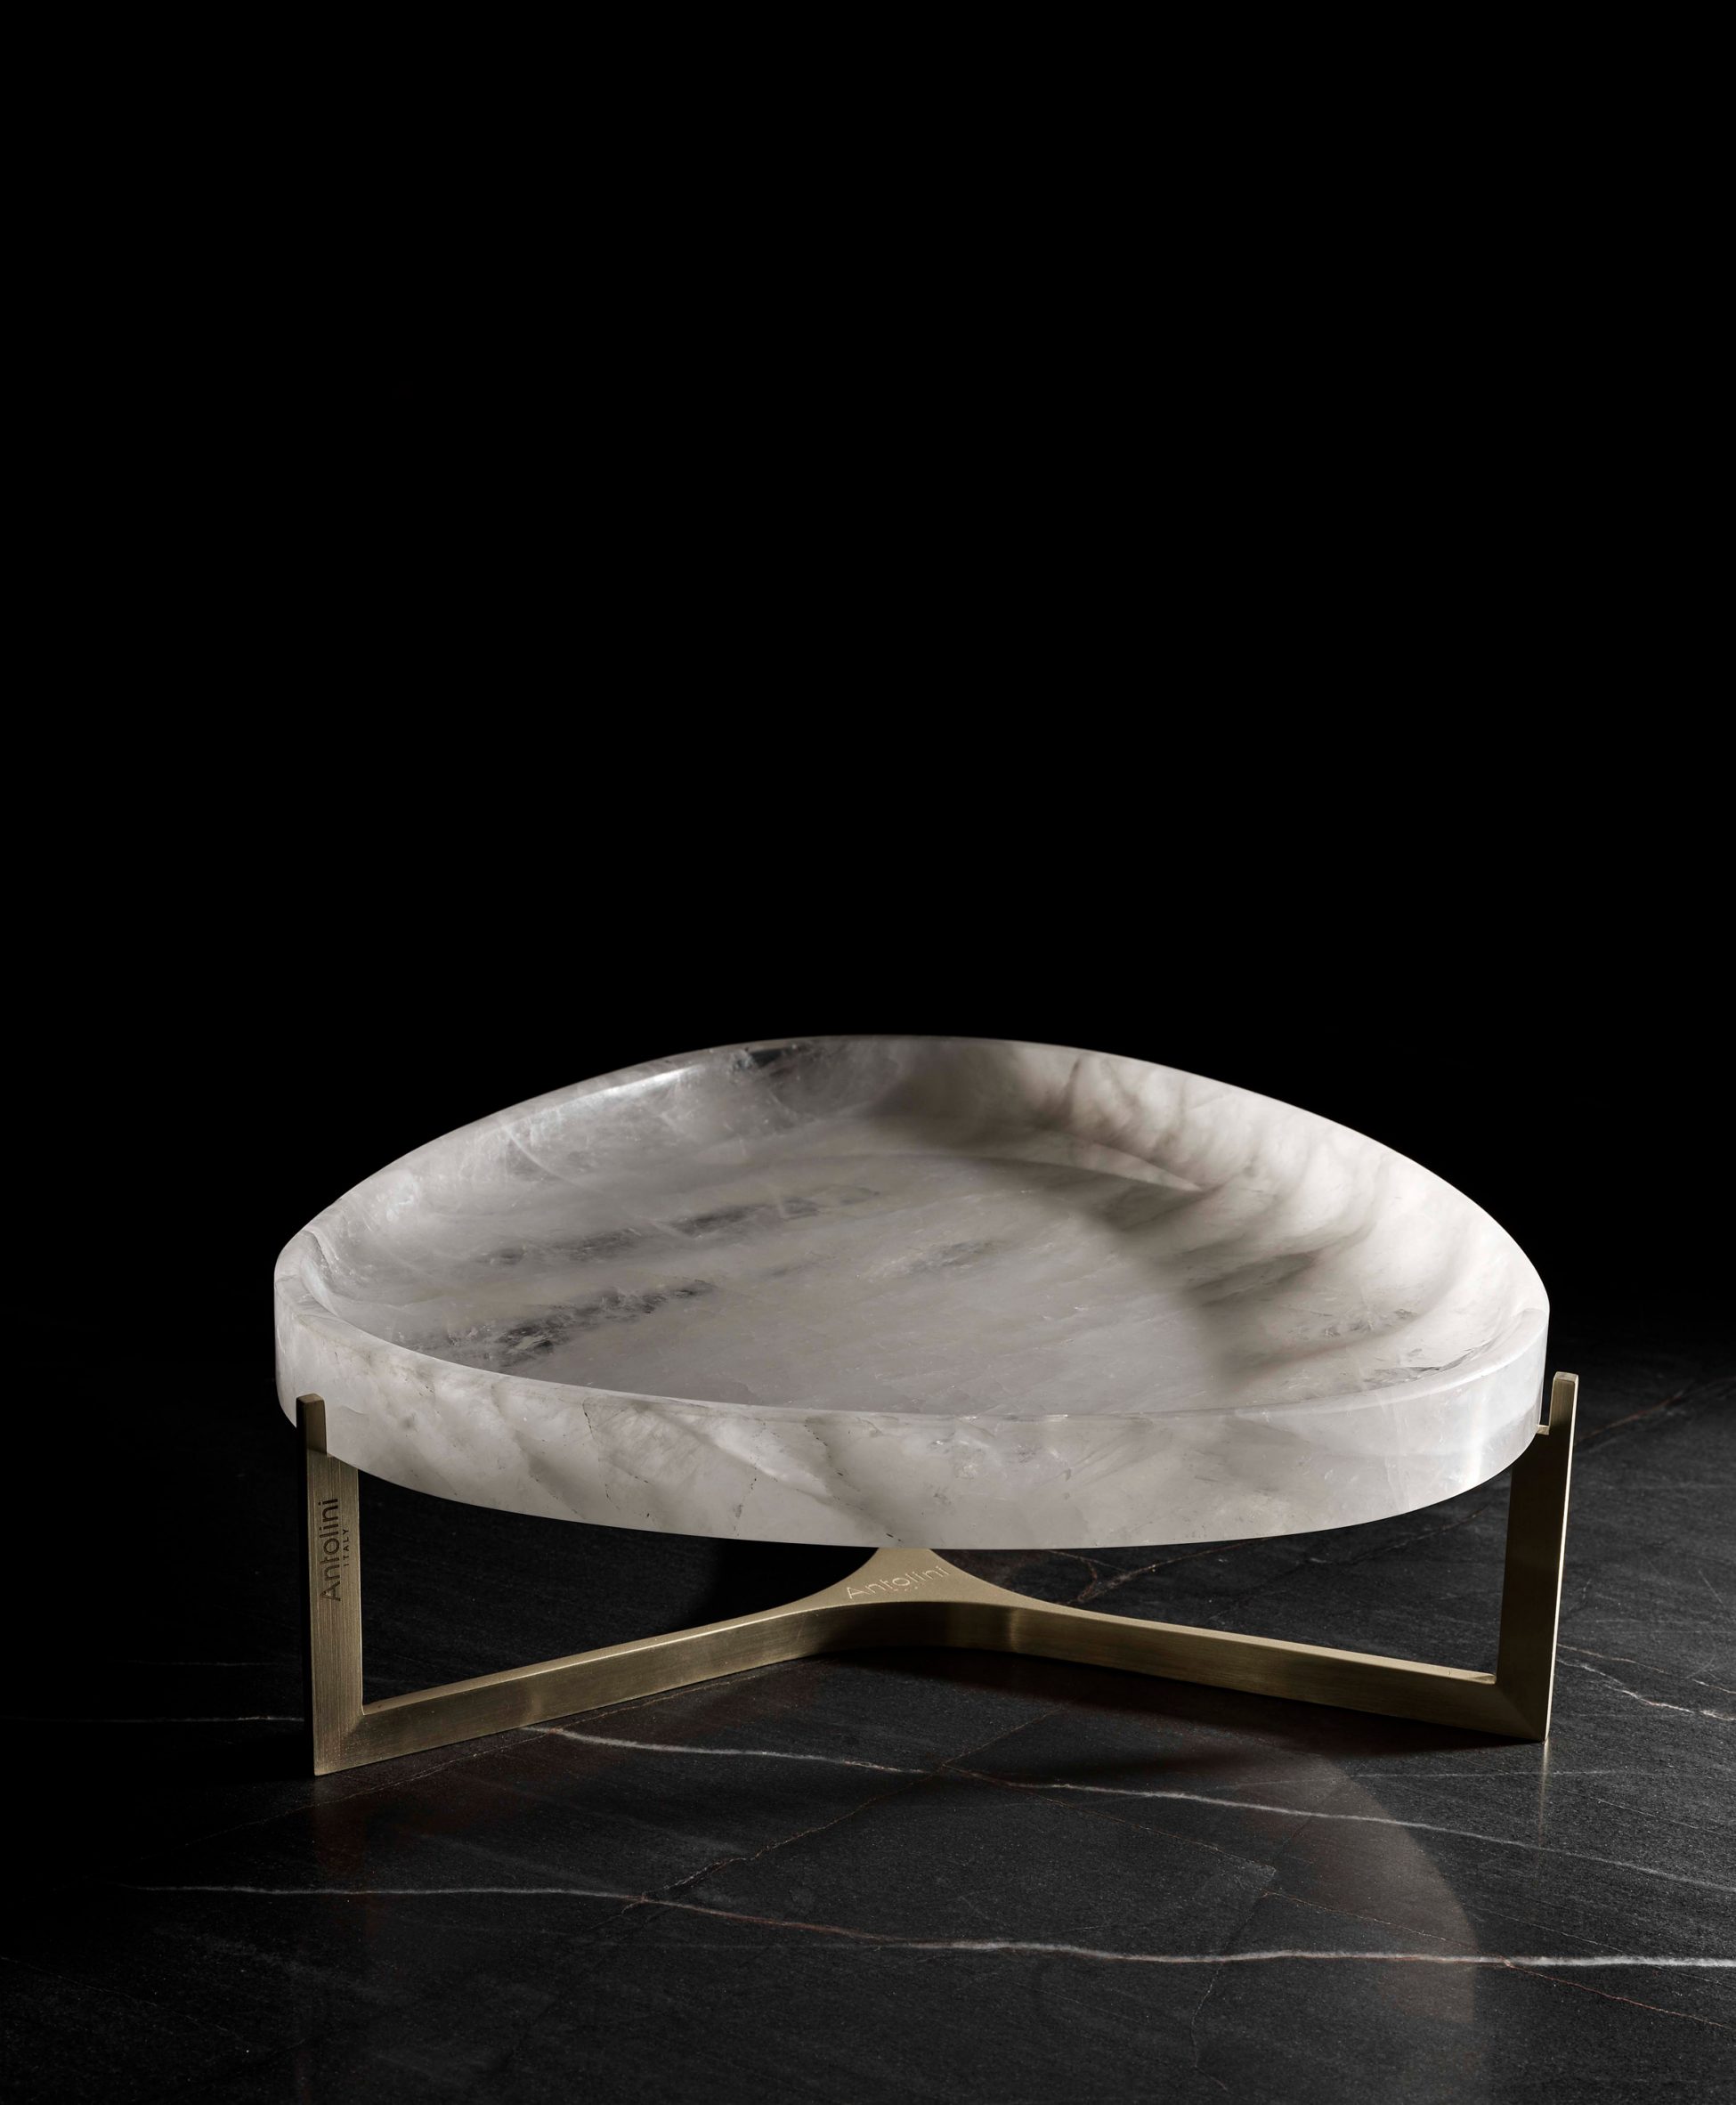 Cristallo Vitrum tableware by Alessandro La Spada for Antolini